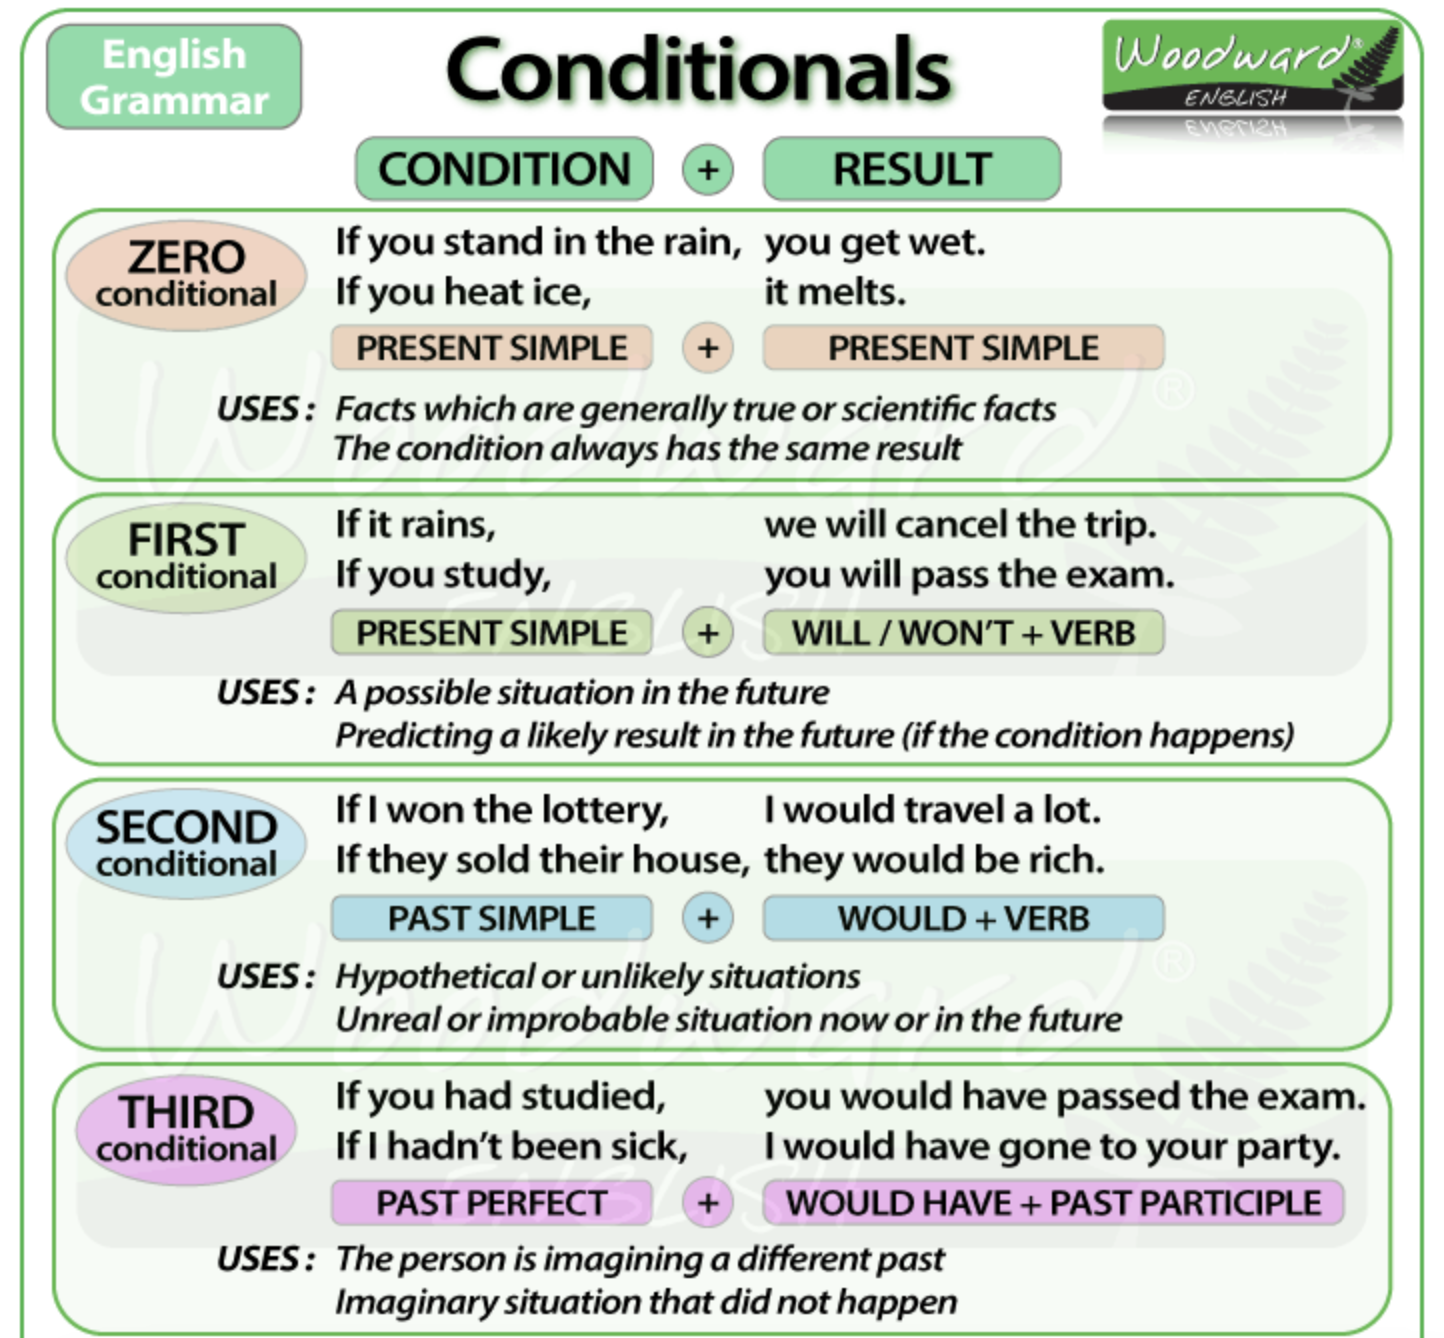 Skysmart английский язык 6 класс. Английский 0 1 2 3 conditional. Conditionals в английском 0 1 2. Conditionals в английском 2 3. 0-3 Conditional в английском языке.